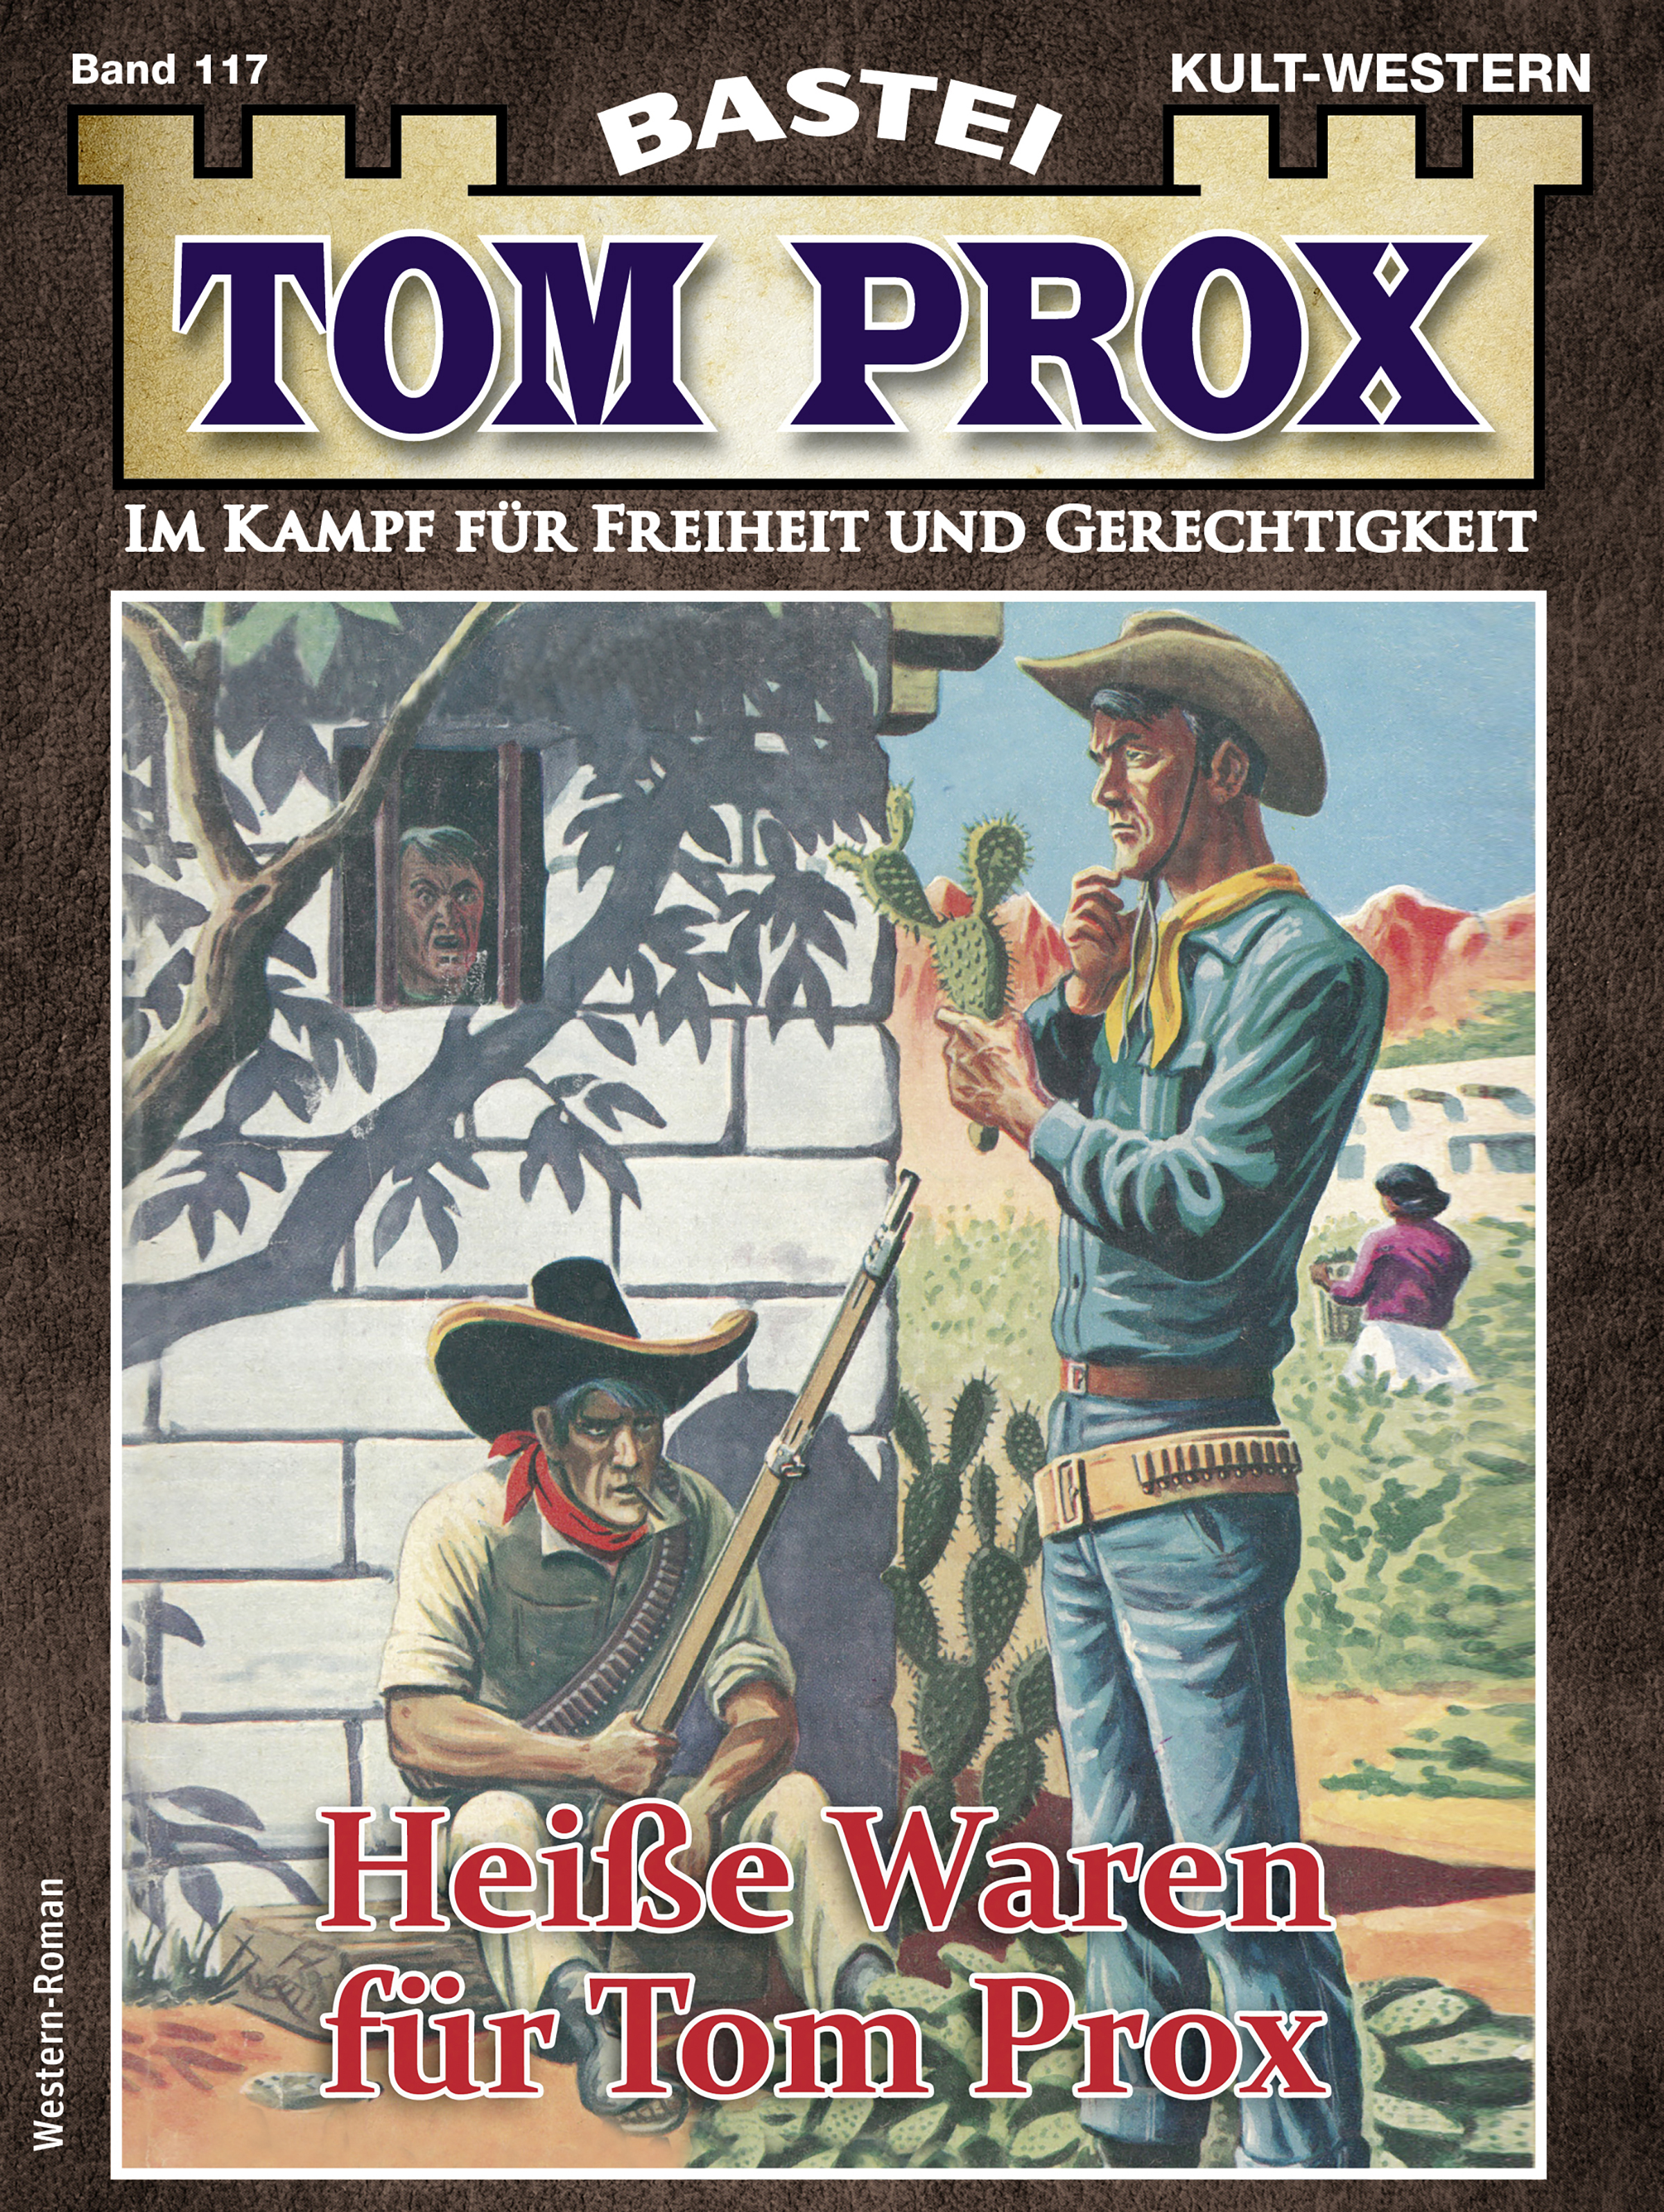 Tom Prox 117